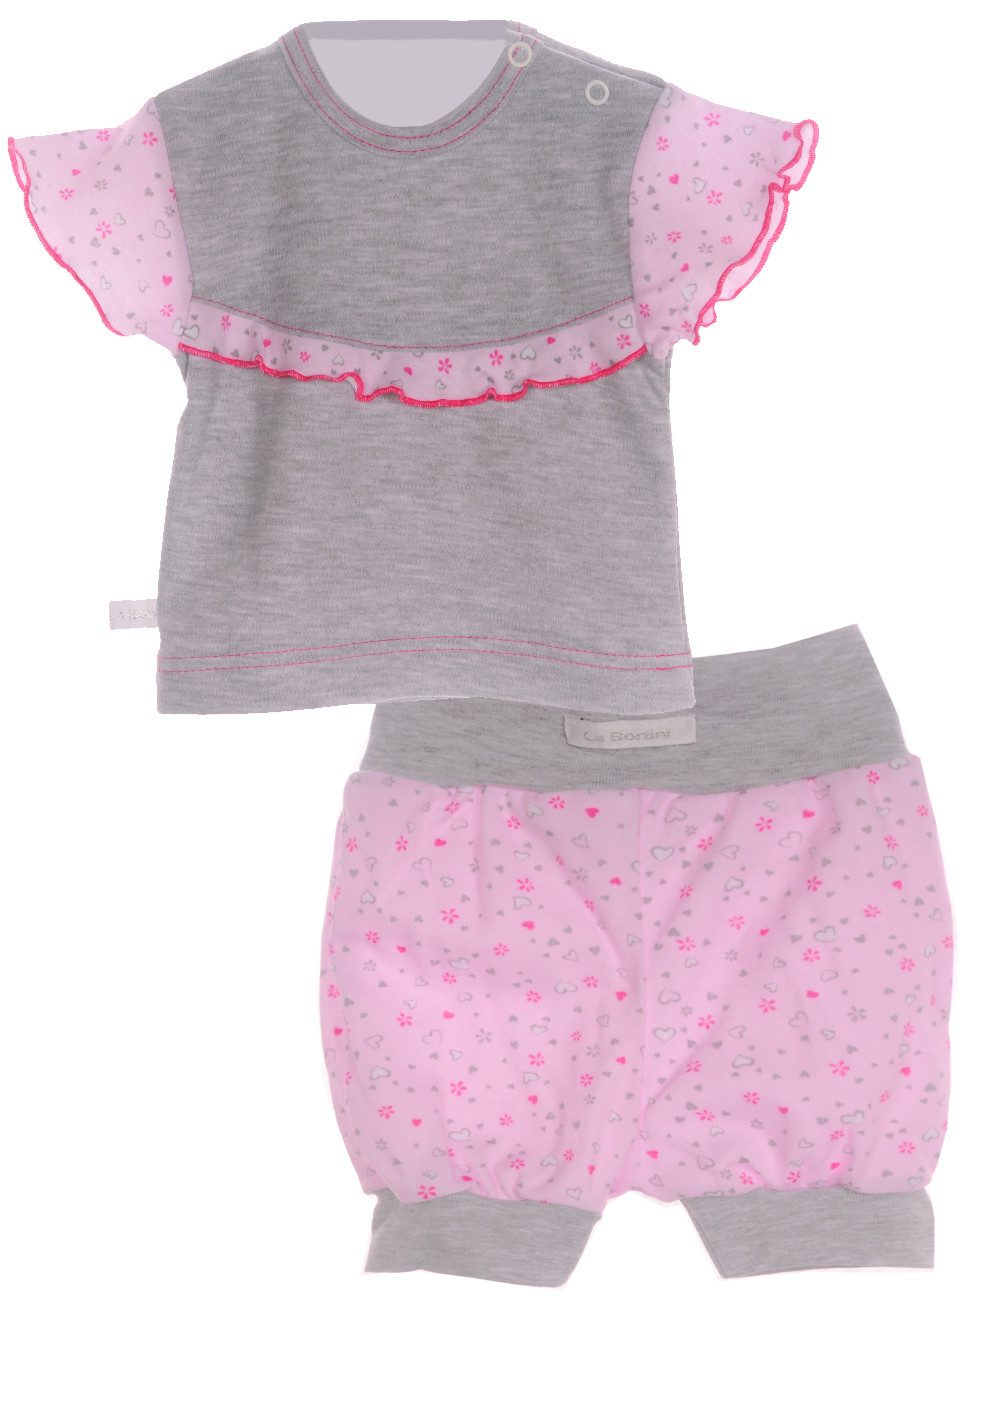 La Bortini Shirt & Shorts Baby Set 2Tlg Kurzarmshirt und kurze Hose aus reiner Baumwolle, 44 50 56 62 68 74 80 86 92 98